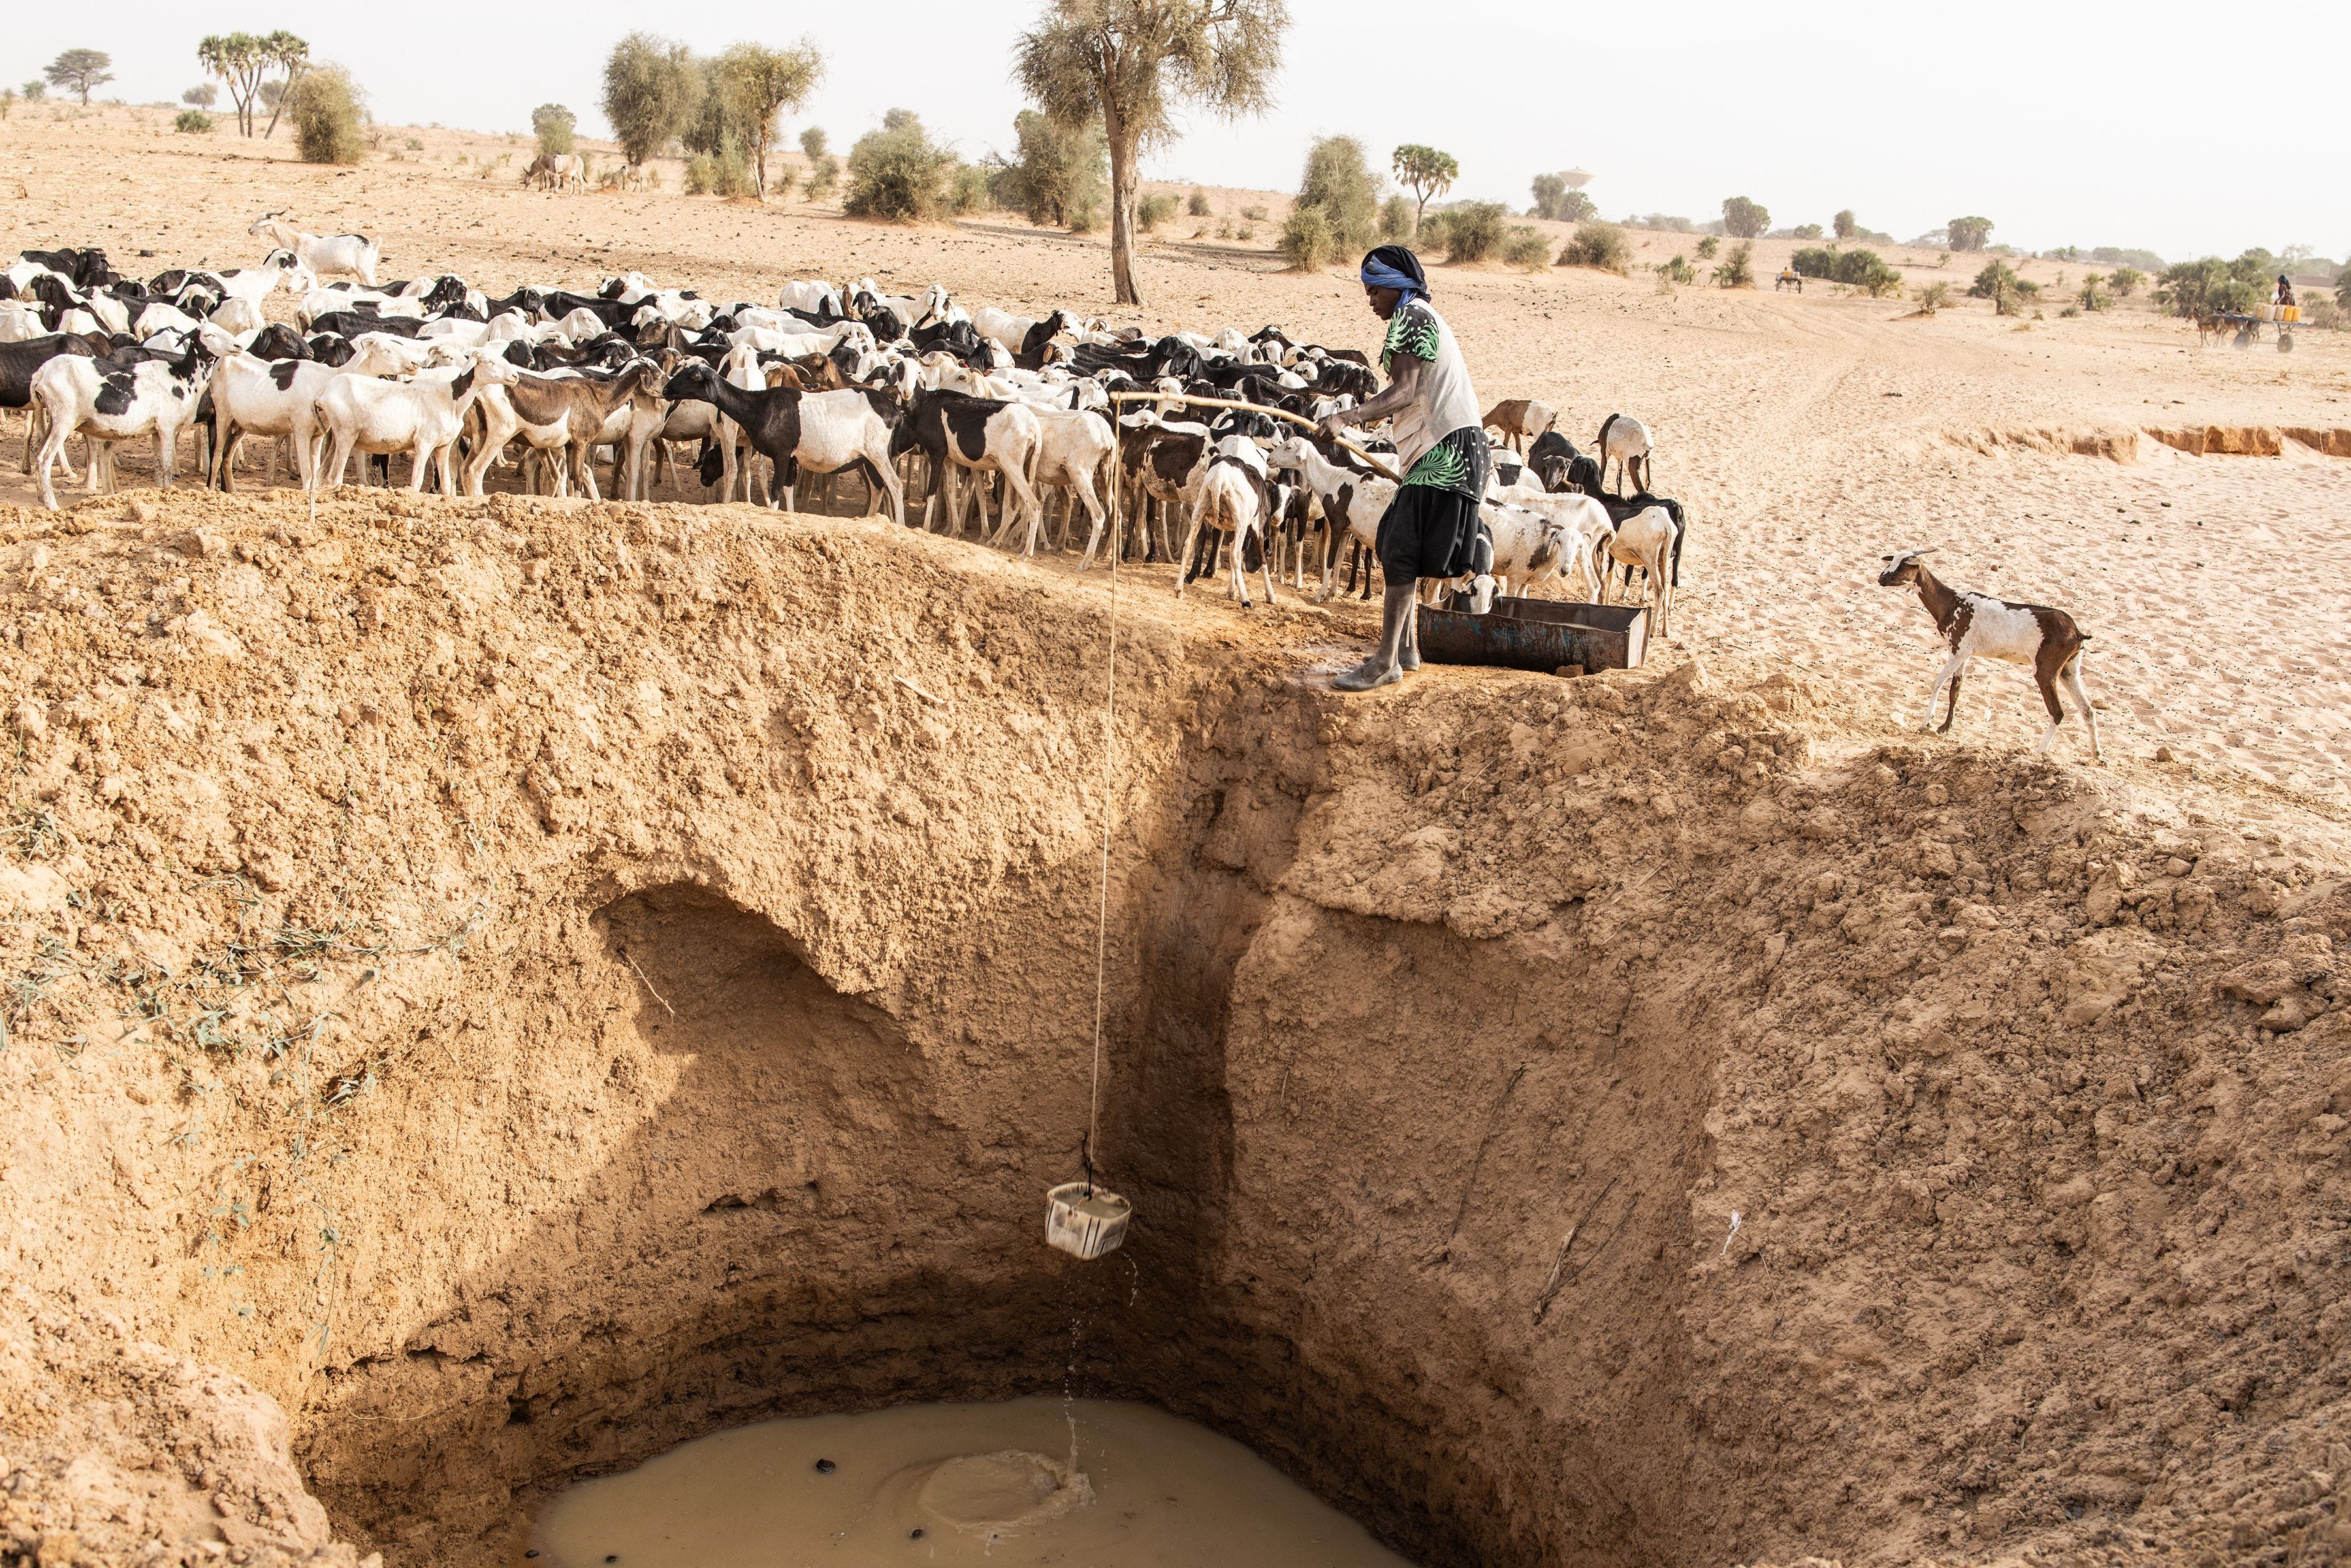 Das Bild zeigt einen Hirten, der einen Eimer aus einem tiefen Loch in einem ausgetrockneten Flussbett hebt, um seine Ziegenherde mit Wasser zu versorgen.